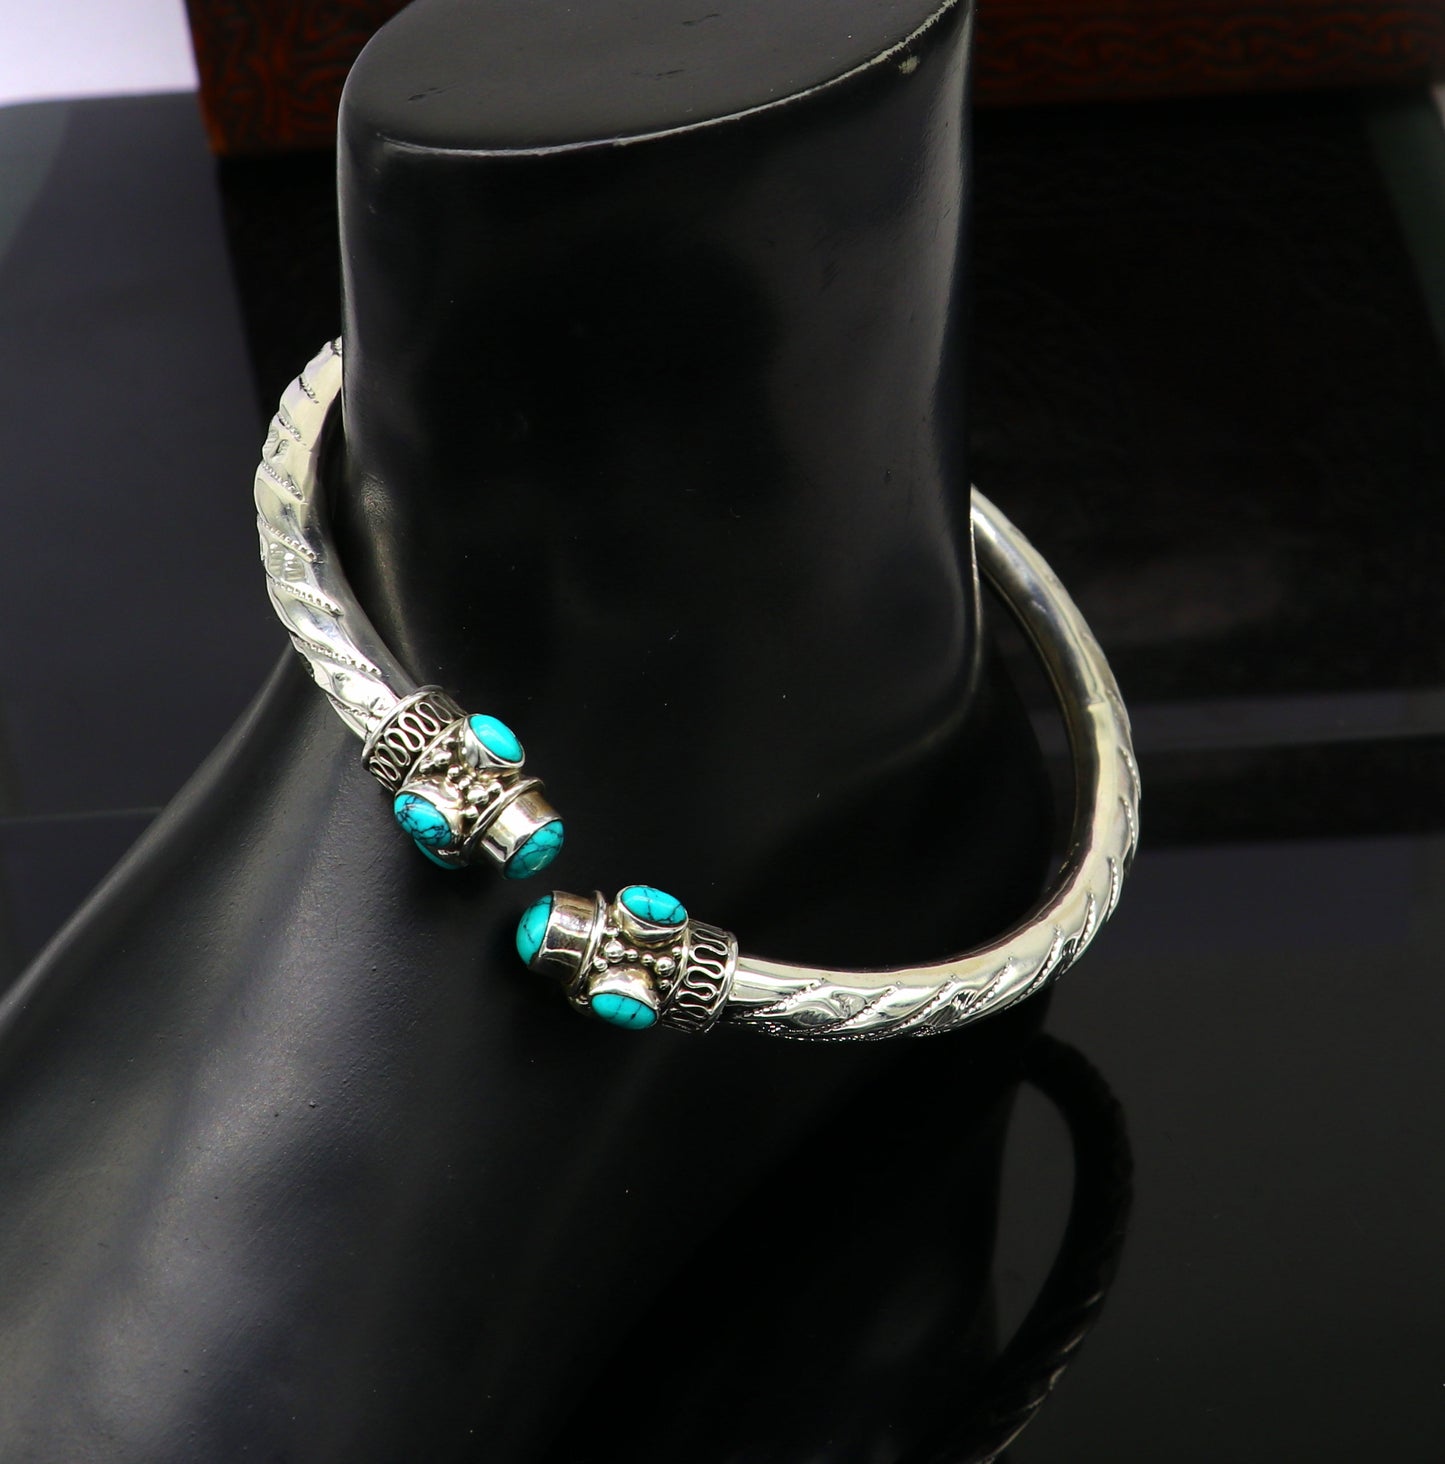 Stylish customized design Ankle kada, ankle bangle bracelet with gorgeous turquoise stone, amazing brides made wedding gifting anklets sak15 - TRIBAL ORNAMENTS